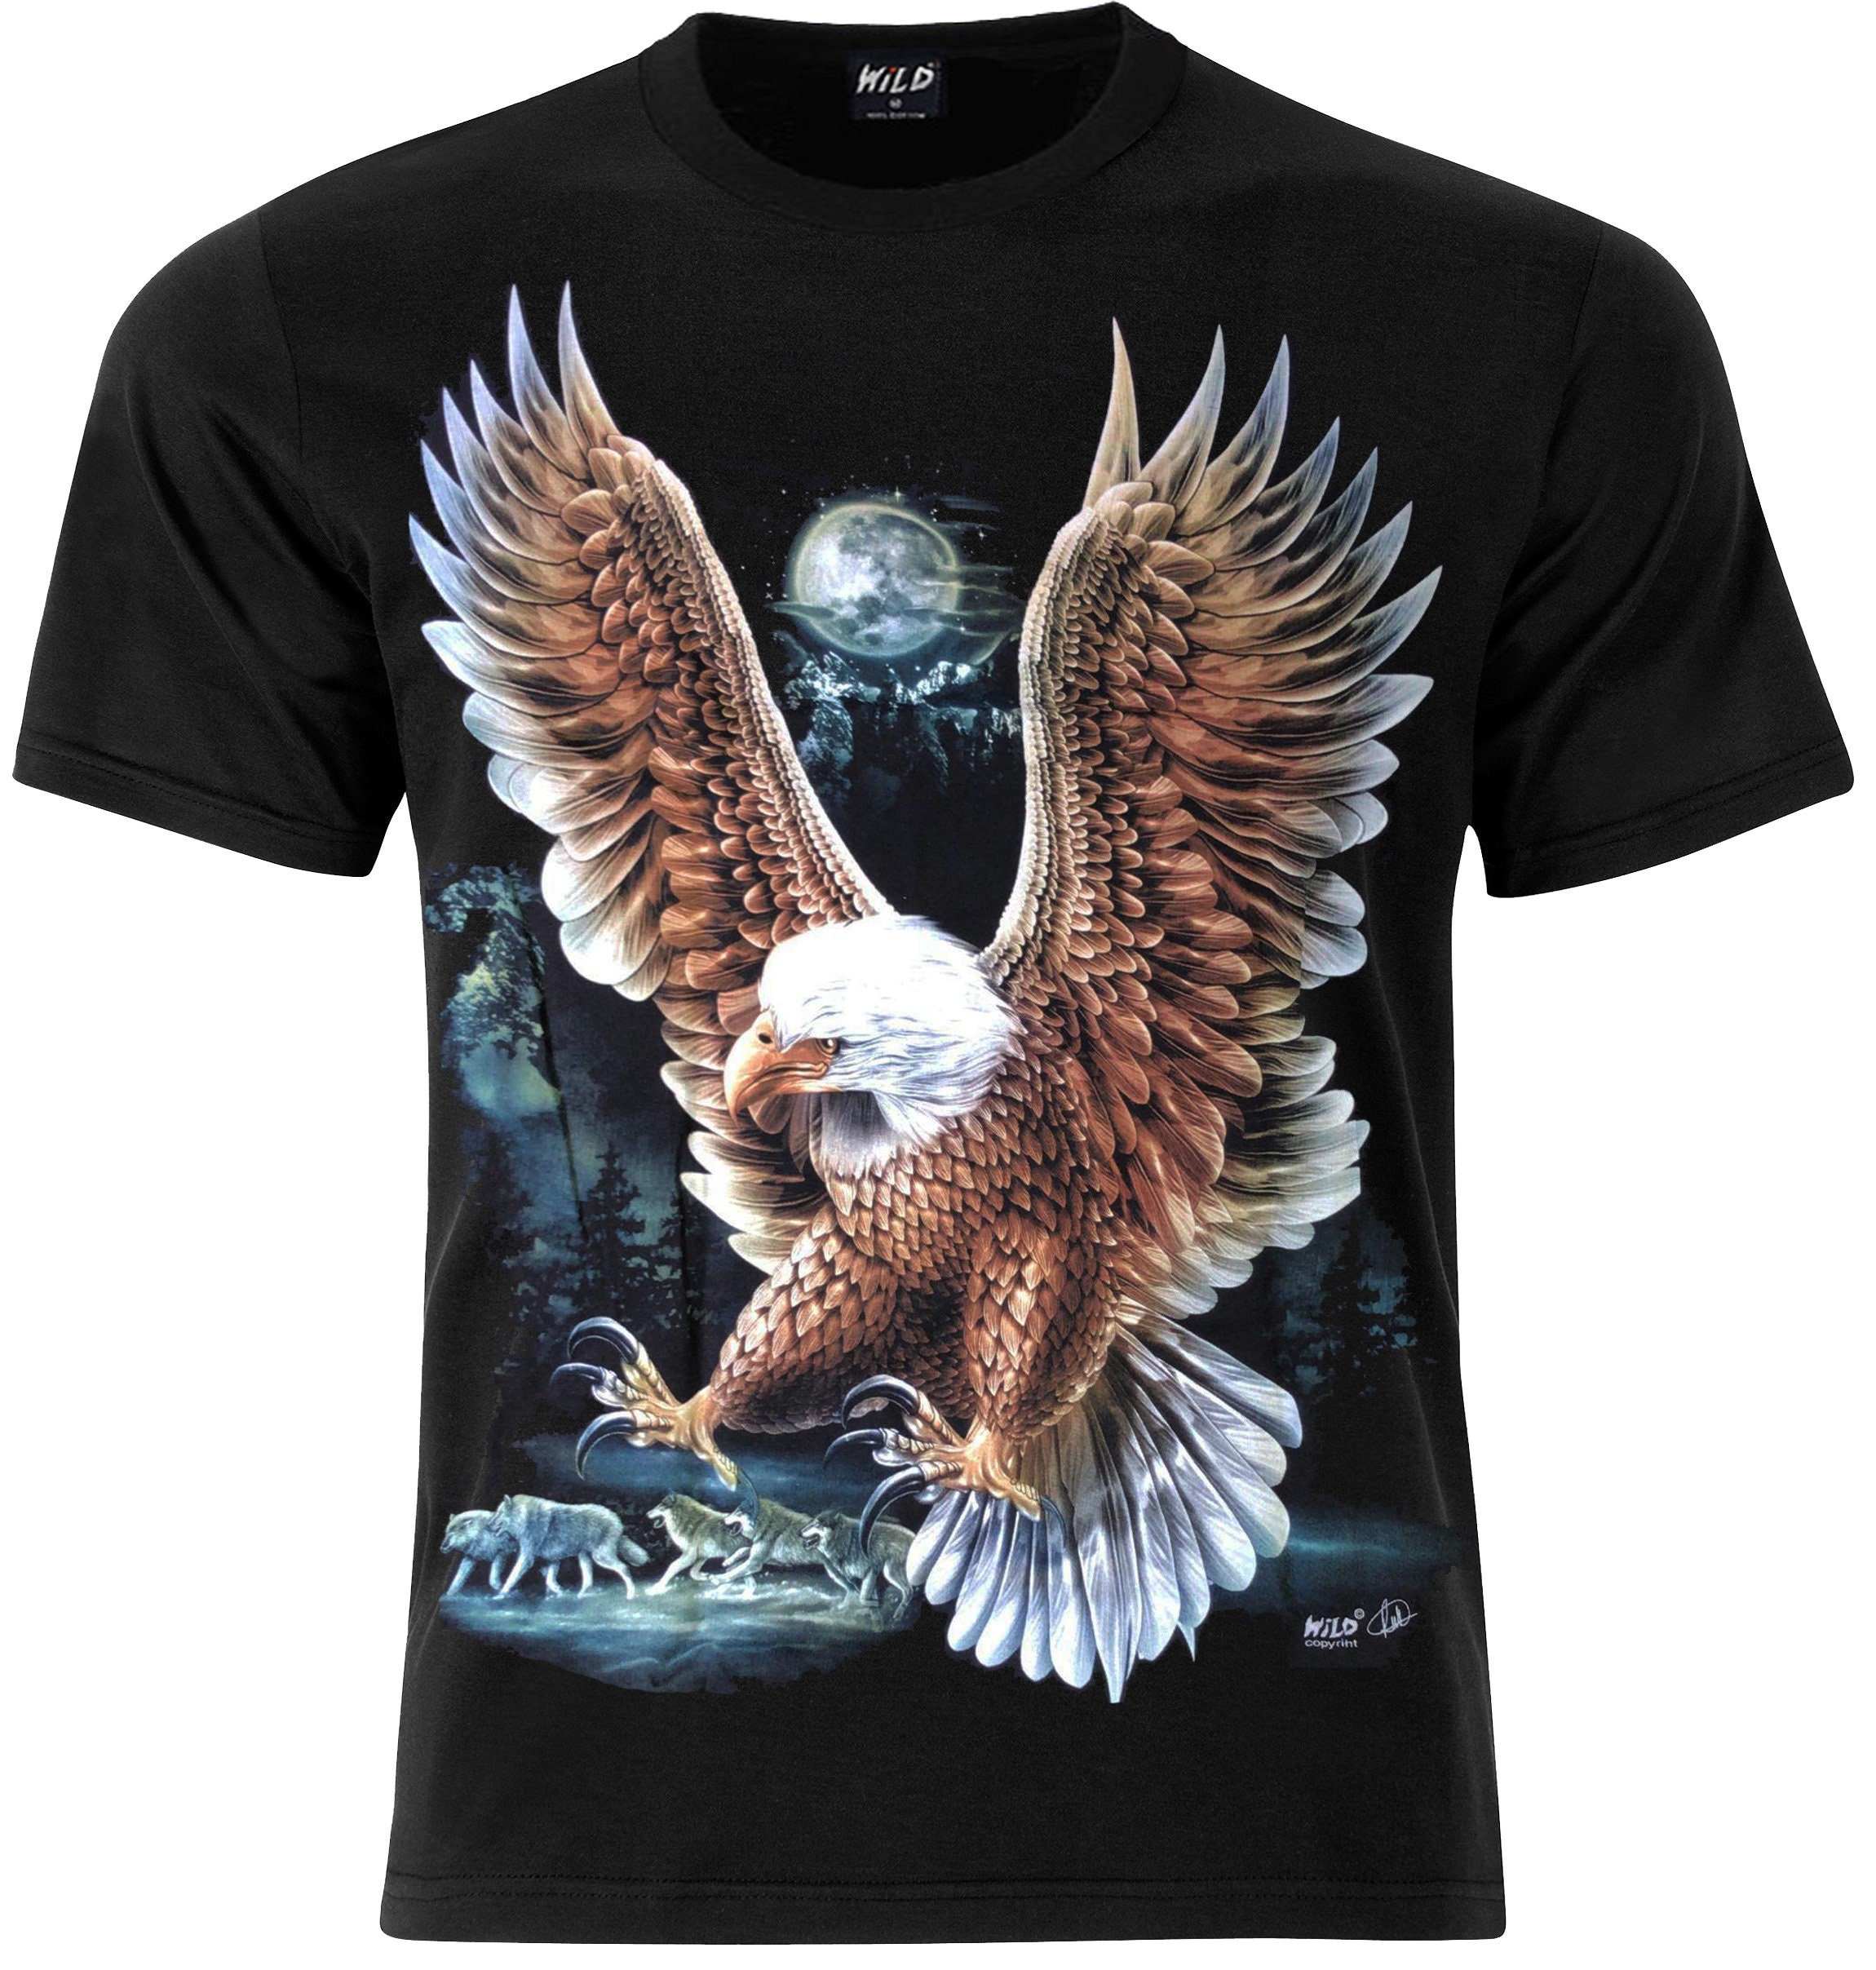 Bald Eagle T-Shirt | Etsy